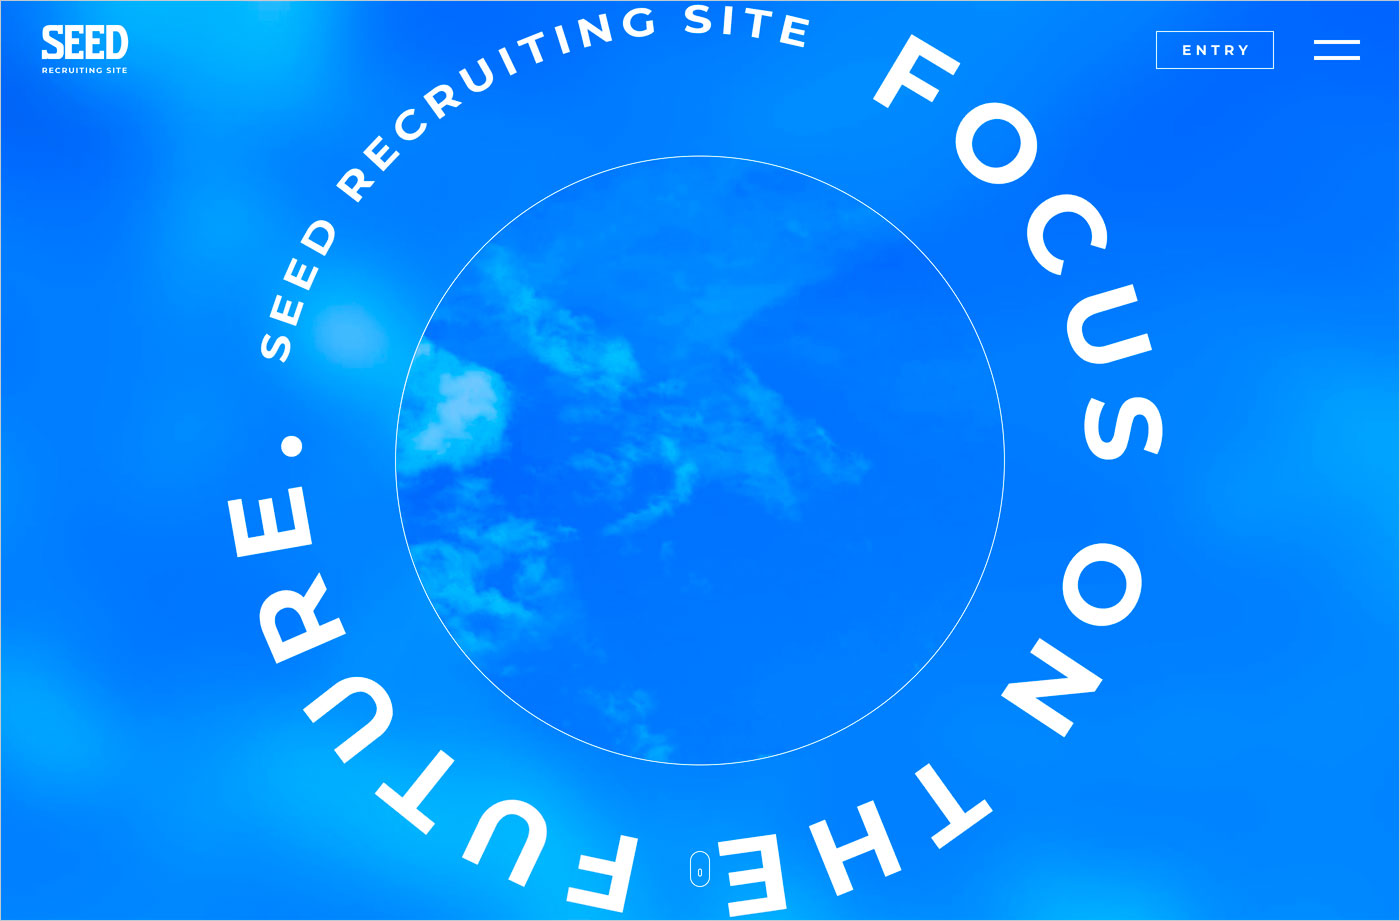 FOCUS ON THE FUTURE. | SEED採用サイトウェブサイトの画面キャプチャ画像